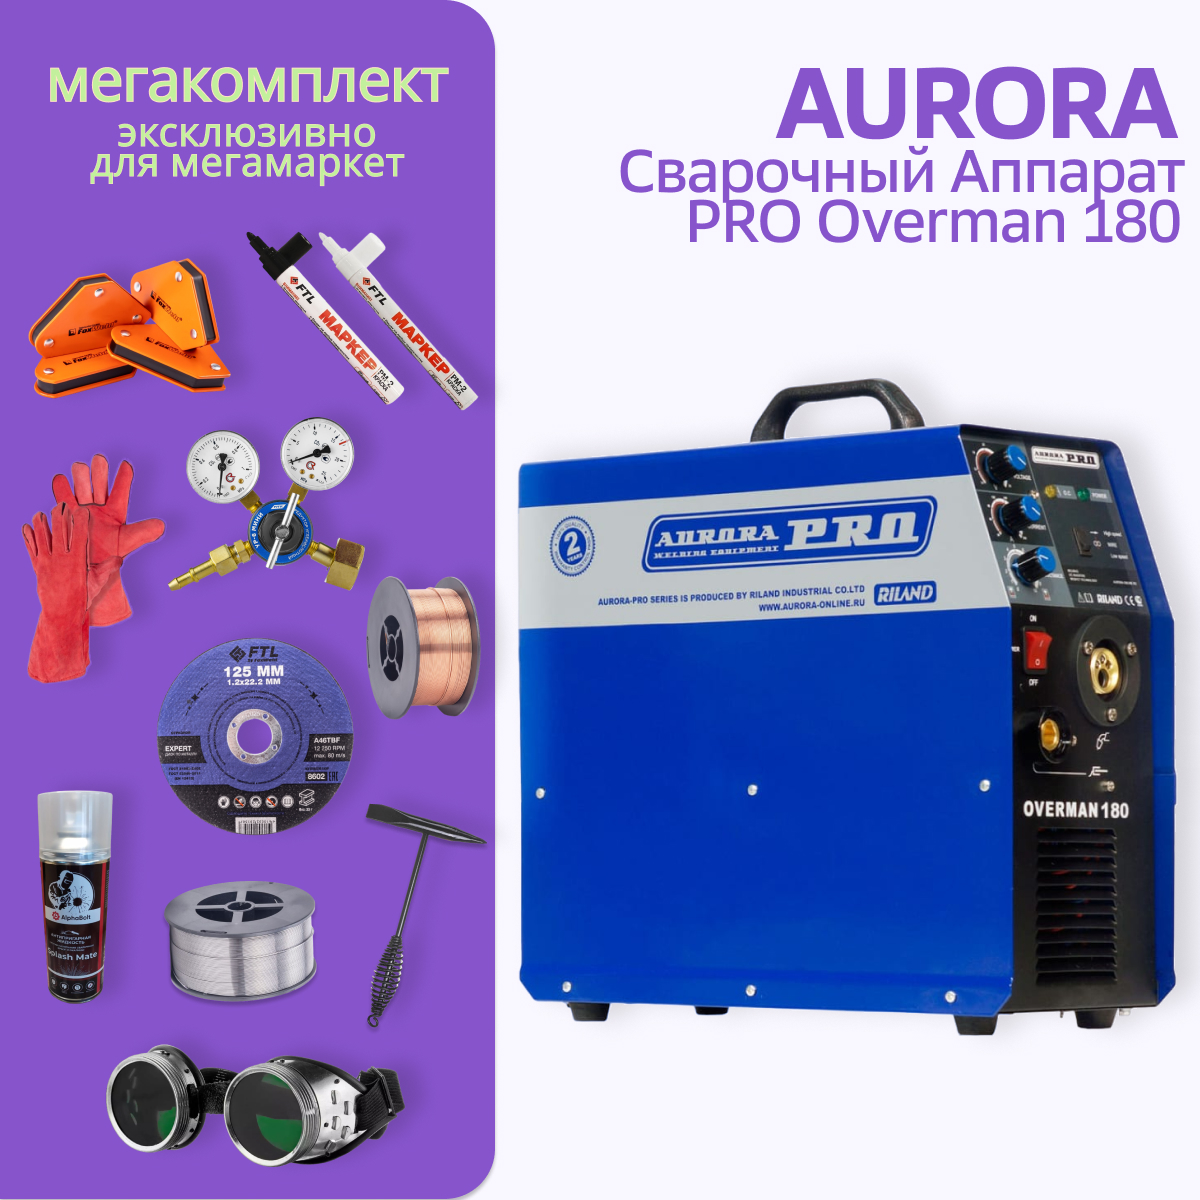 Сварочный полуавтомат Aurora PRO OVERMAN 180 + МЕГА комплект сварочный полуавтомат aurora pro overman 185 маска сварщика спрей редутор мини